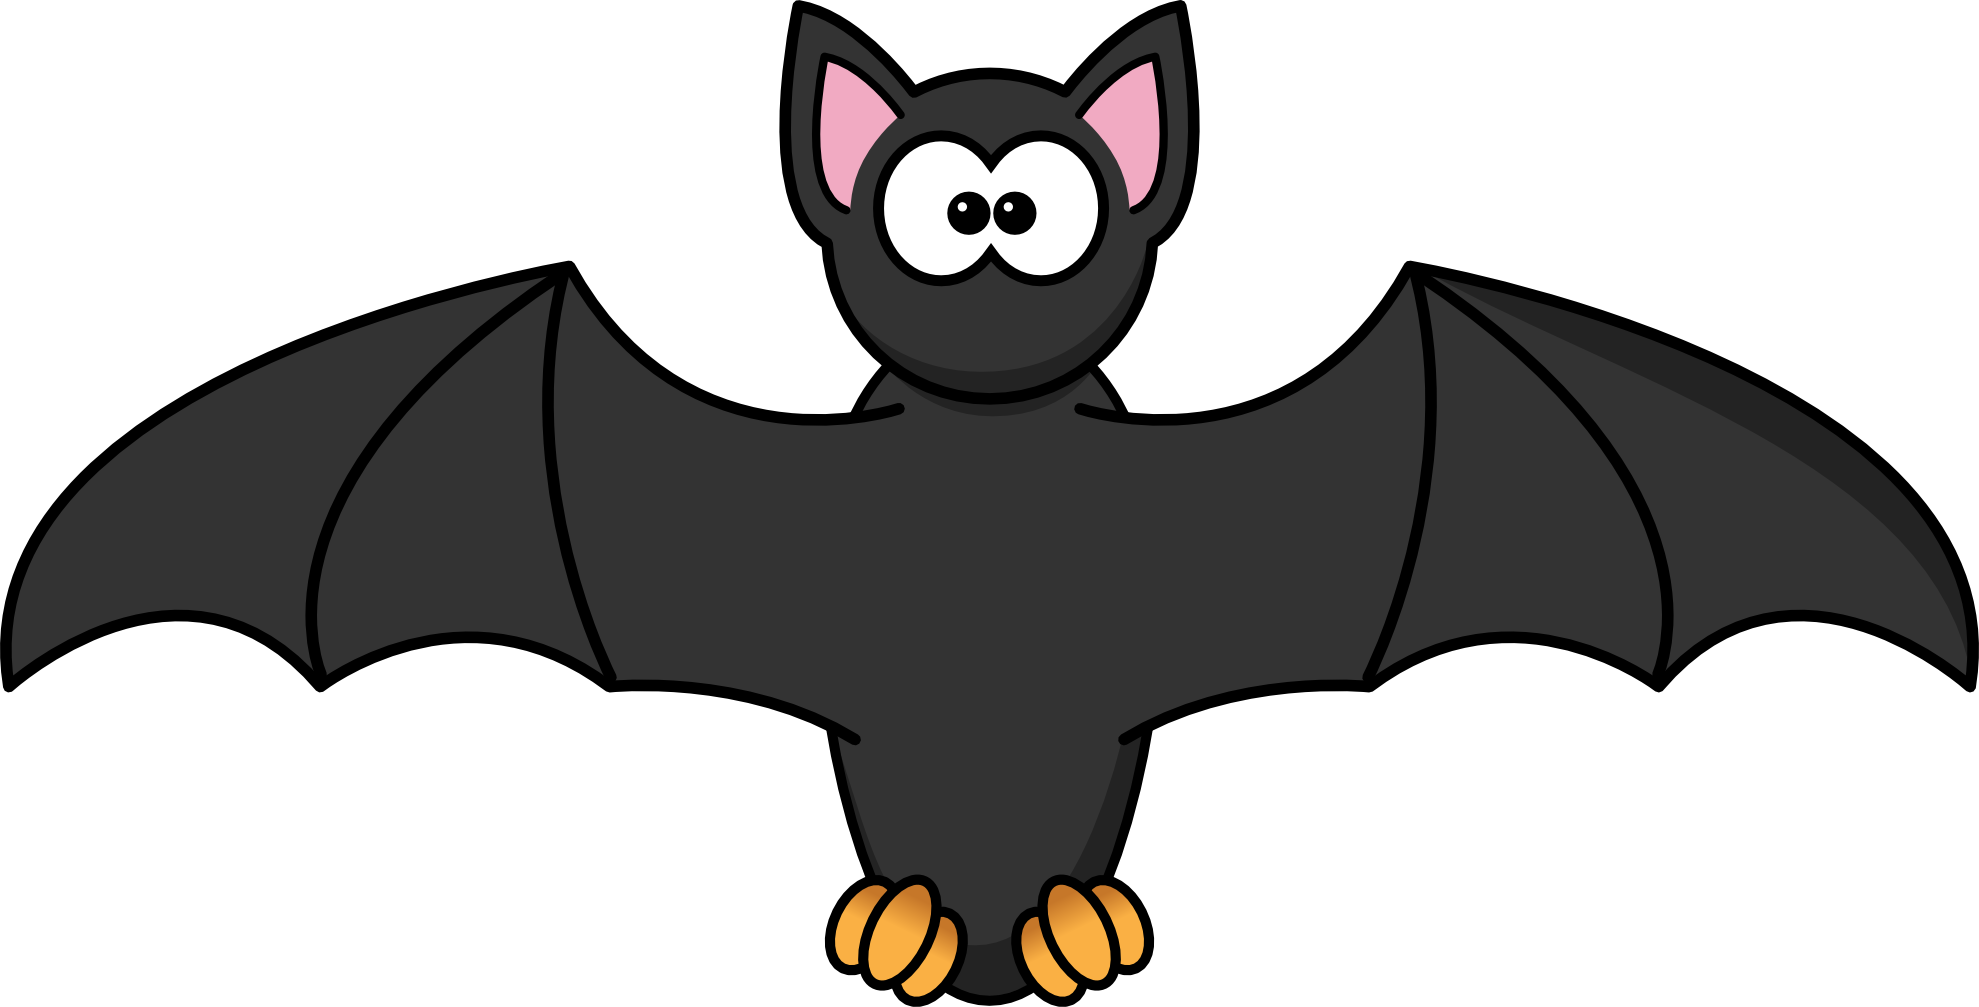 Cartoon Bat Images - Cliparts.co